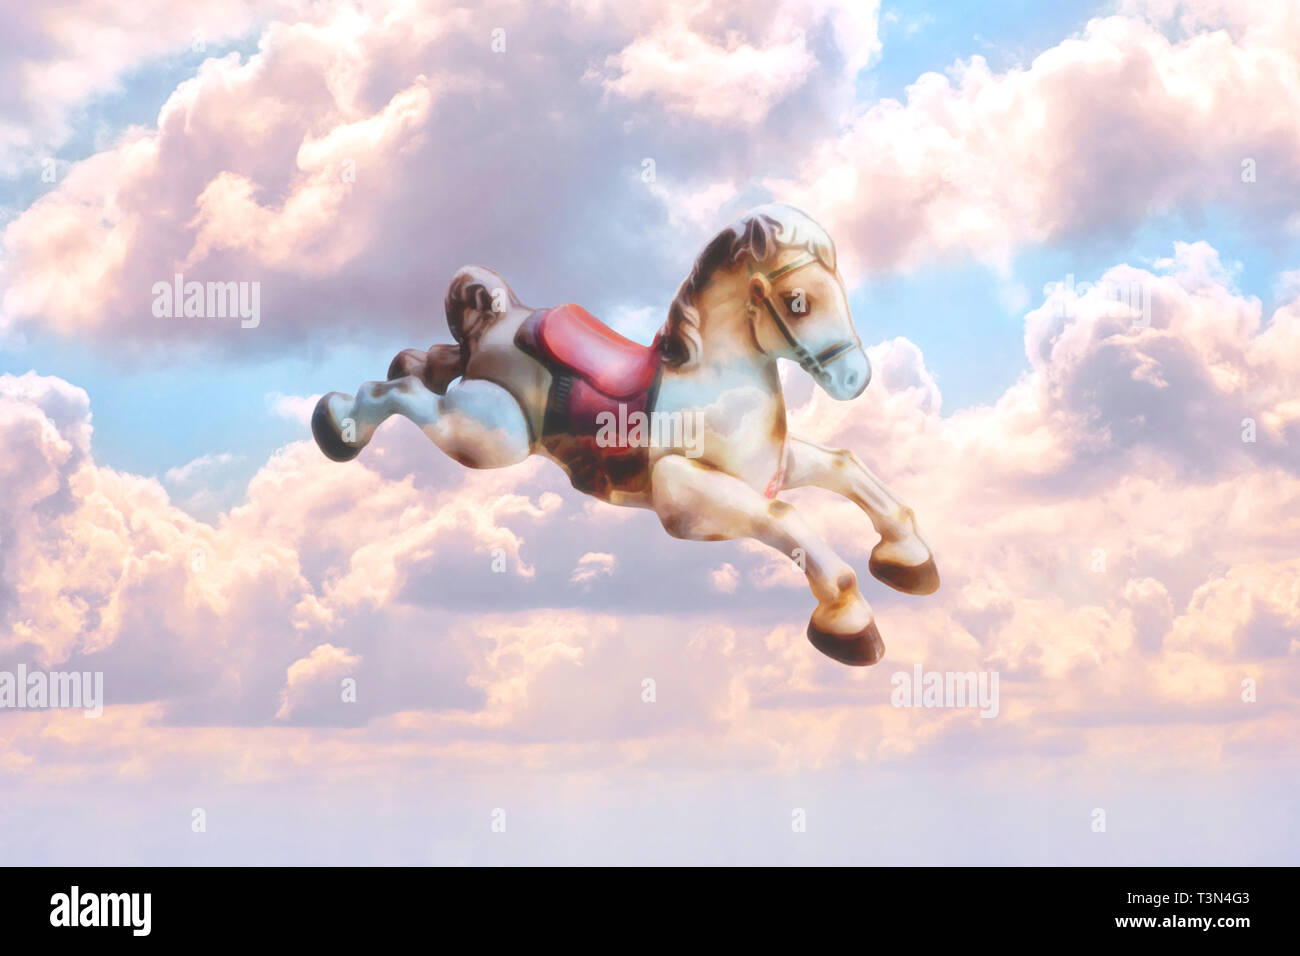 Konzept Bild eines altmodischen Spielzeug Schaukelpferd durch den Himmel fliegen, die rosa Wolken auf seinem Körper widerspiegelt Stockfoto